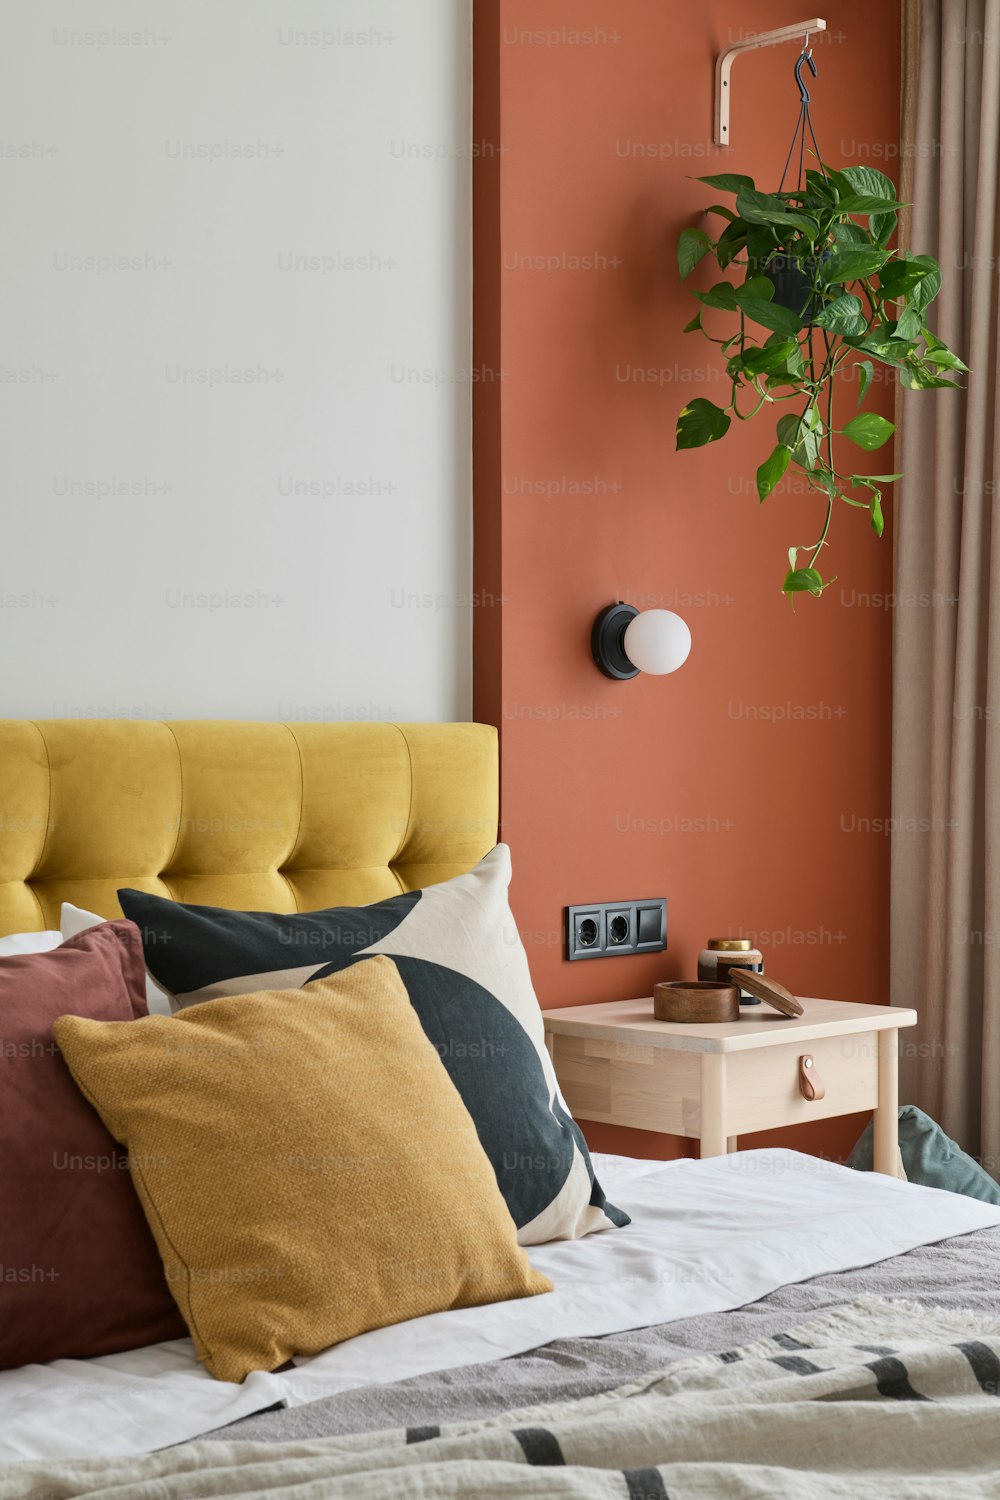 ein Bett mit einem gelben und orangefarbenen Kissen und einer Pflanze an der Wand